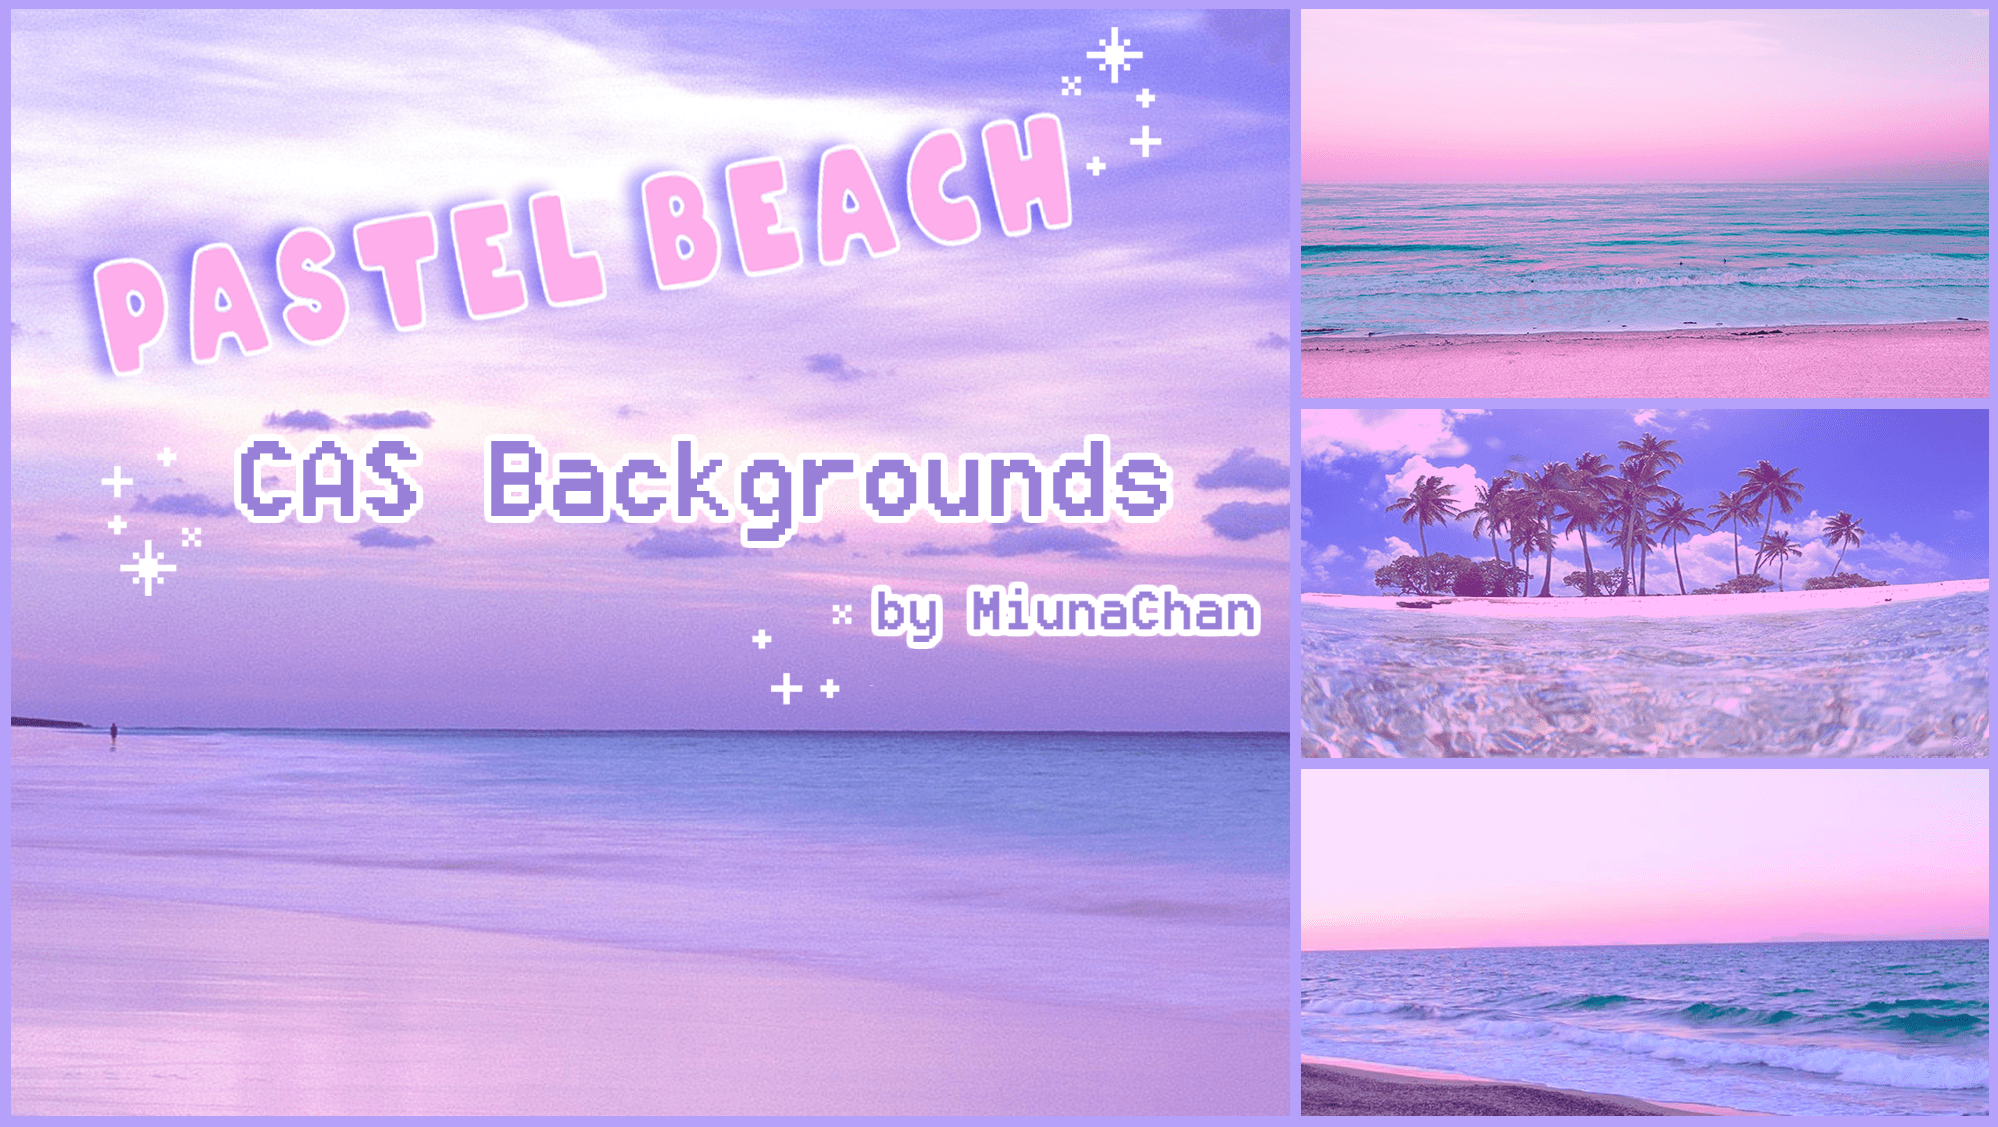 Tìm kiếm một khung cảnh đẹp để tạo nên các mẫu Sims của bạn trong Sims 4? Sims 4 Catalog Pastel Beach CAS Backgrounds sẽ giúp bạn tìm ra một số lựa chọn thú vị để kết hợp với sims của bạn.